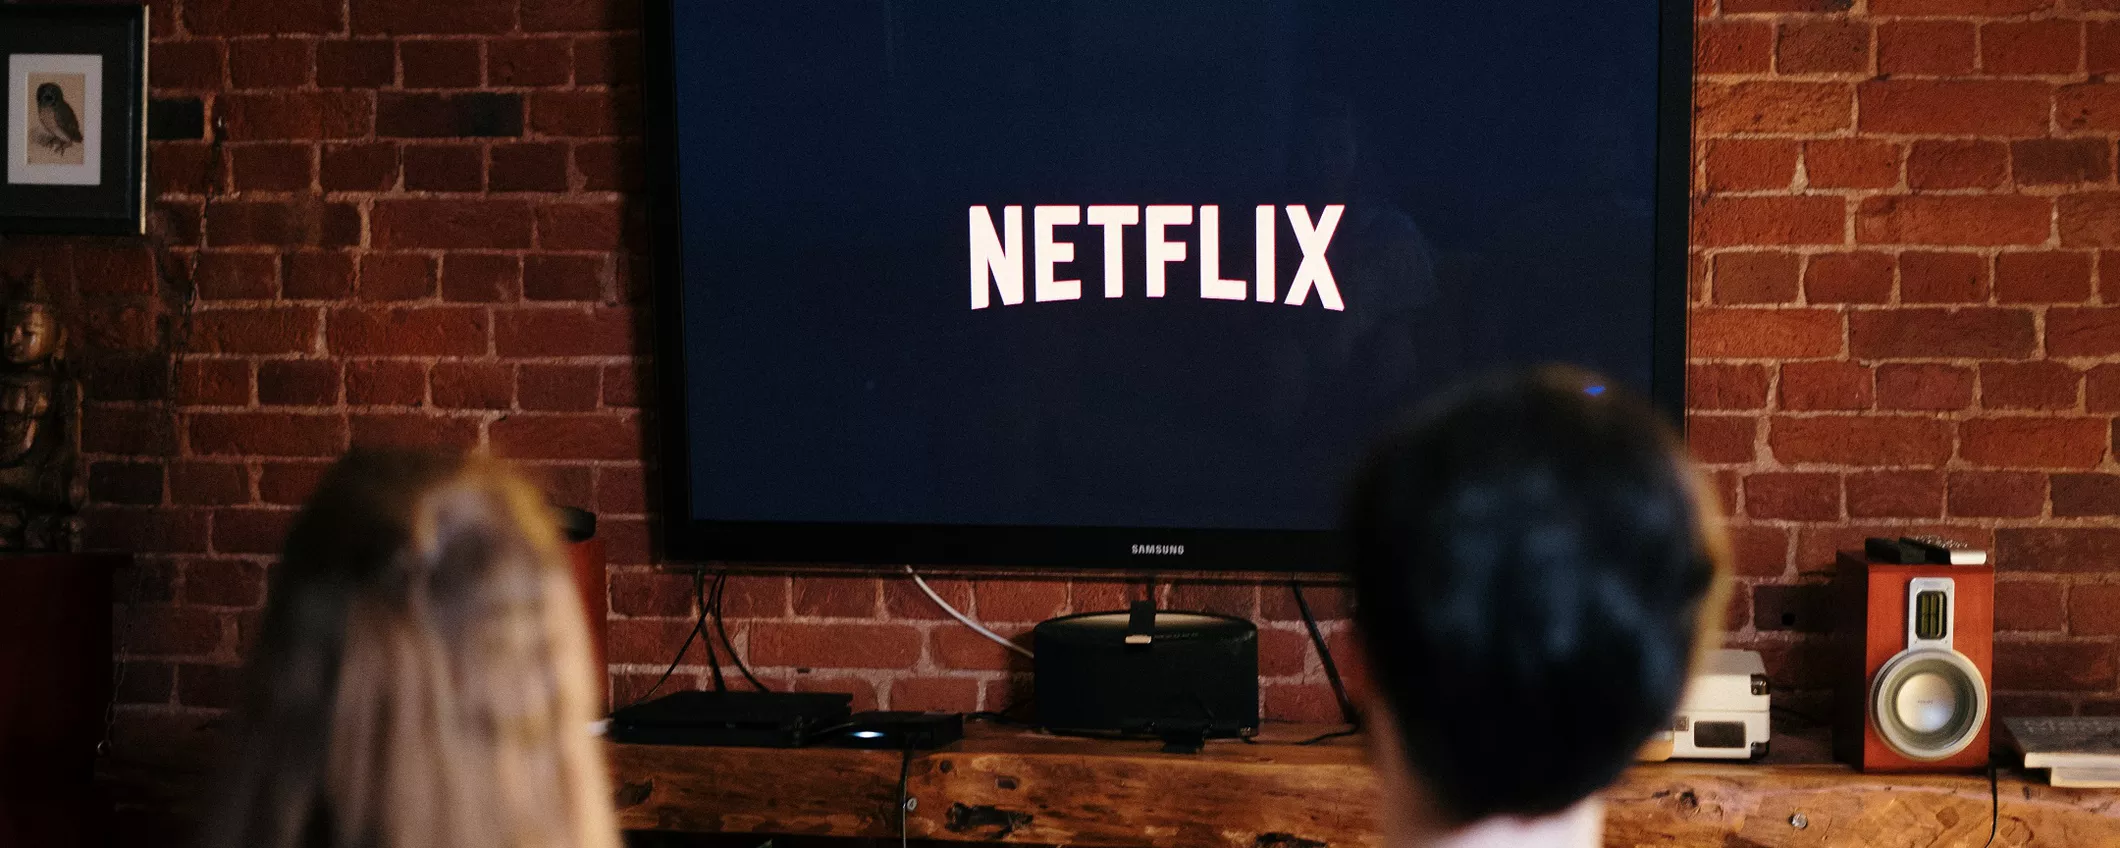 Netflix a prezzo ridotto: è possibile grazie a Sky